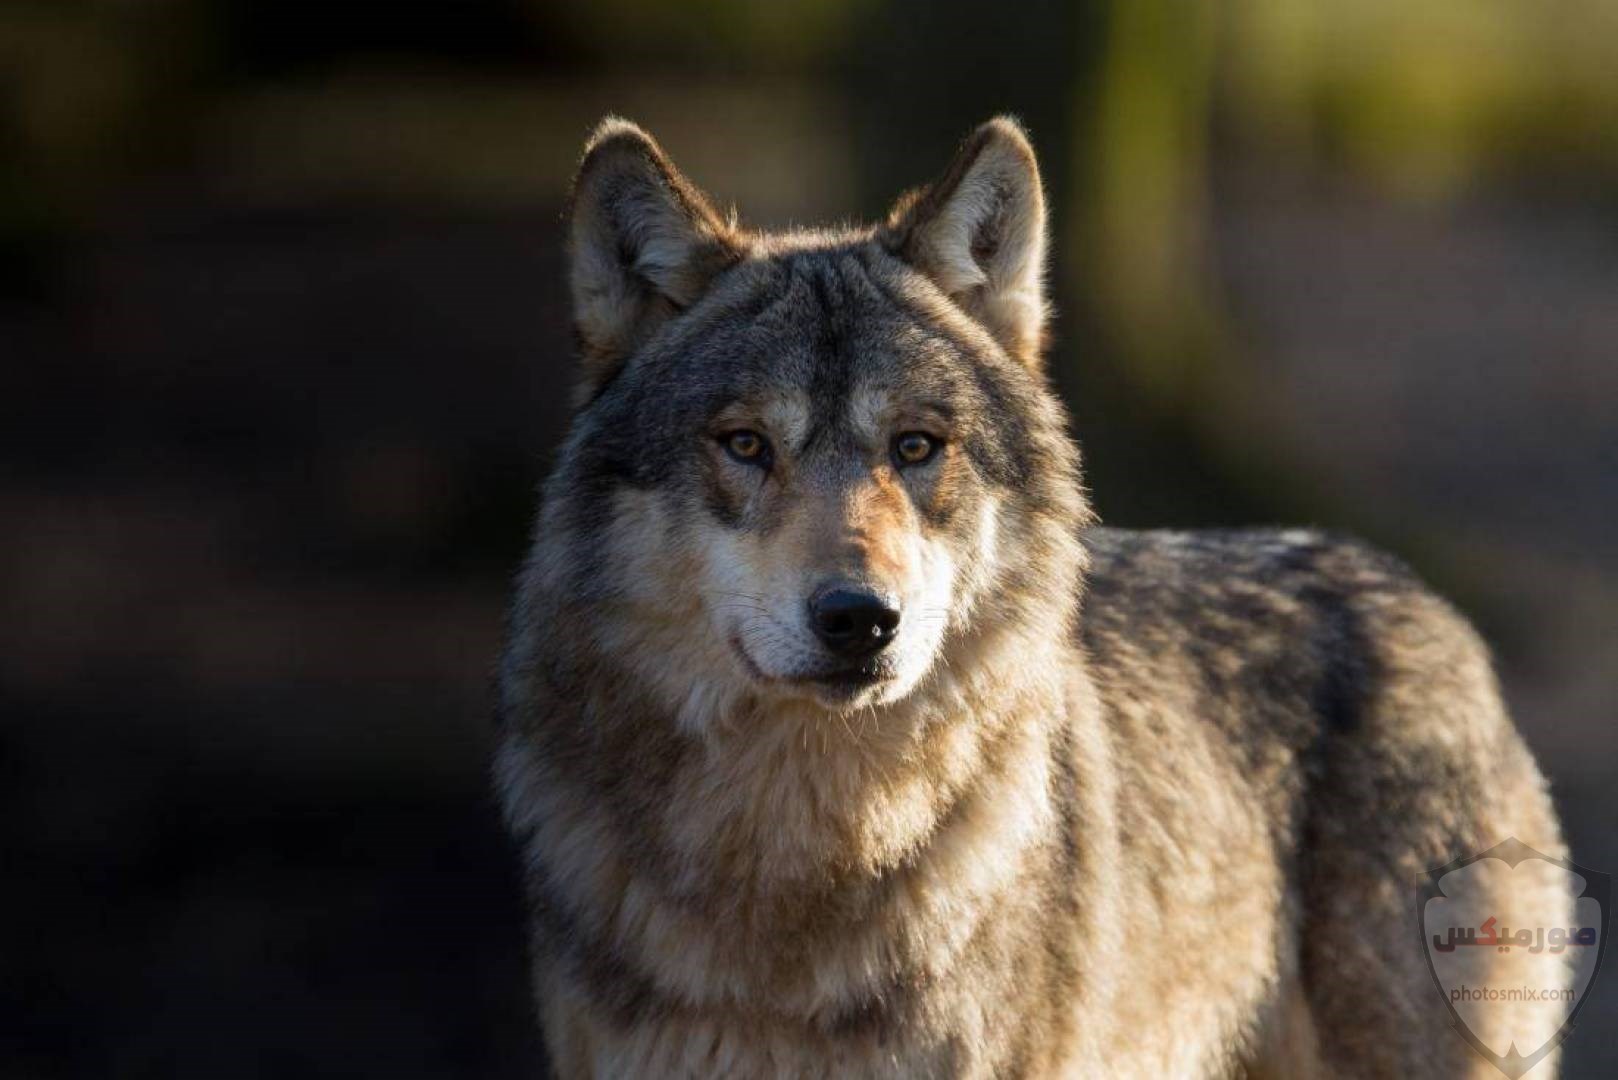 تحميل أحلى صور الذئب صور ذئب حلوة Fox photos Wild 6